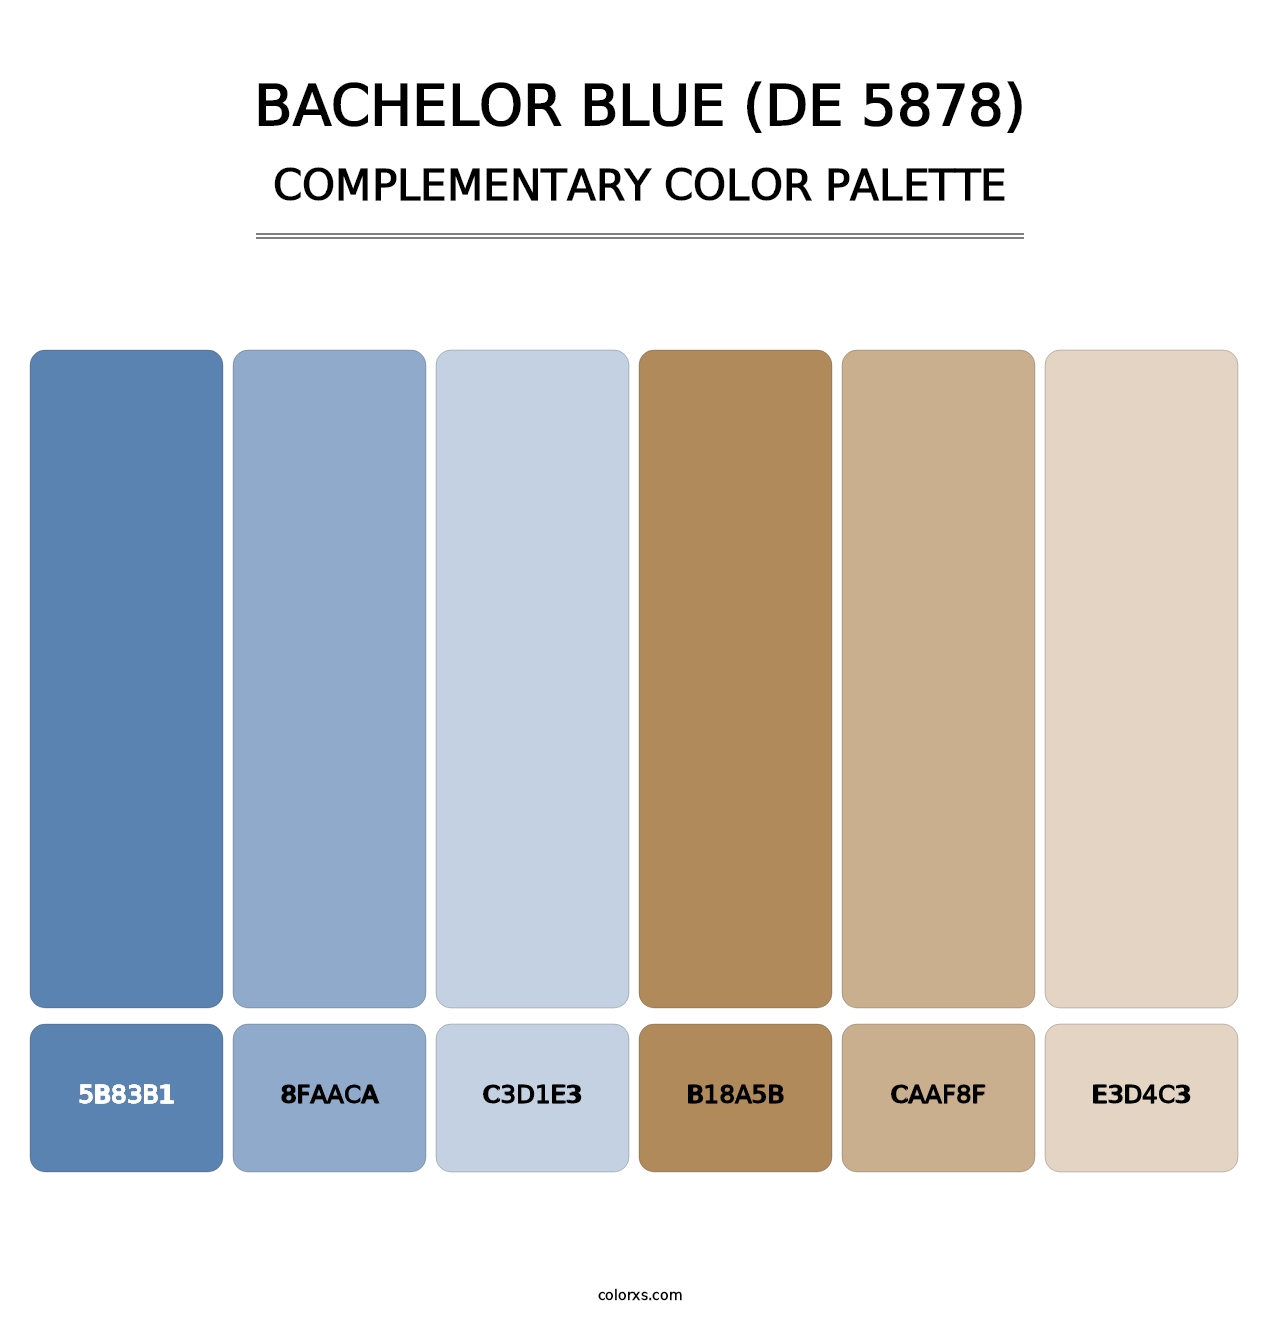 Bachelor Blue (DE 5878) - Complementary Color Palette